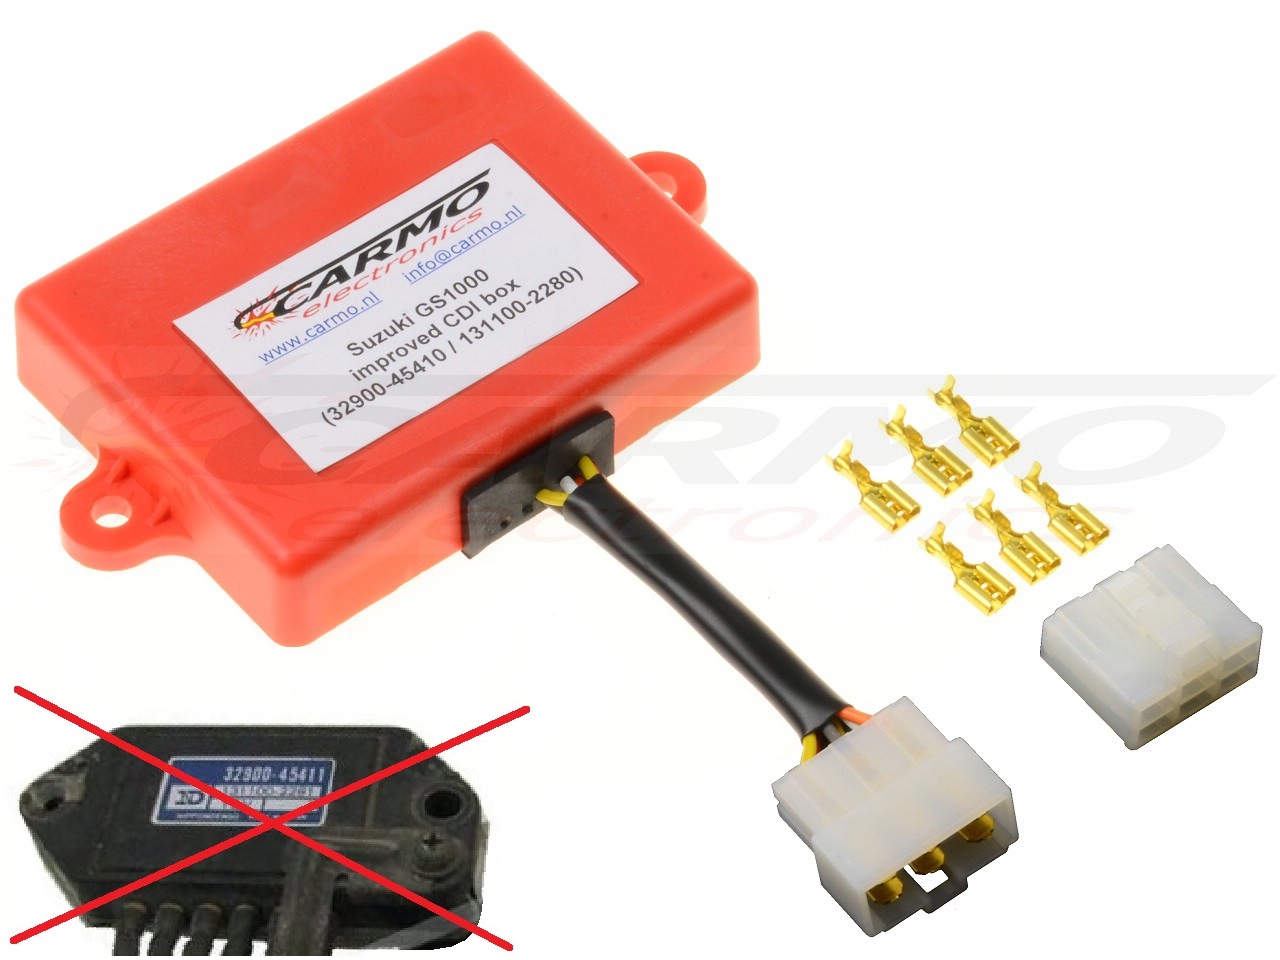 Suzuki GS750 GS850 GS1000 GS1100 igniter ignition module CDI TCI Box (32900-45410 / 45411, 32900-45110 / 45120) - Click Image to Close